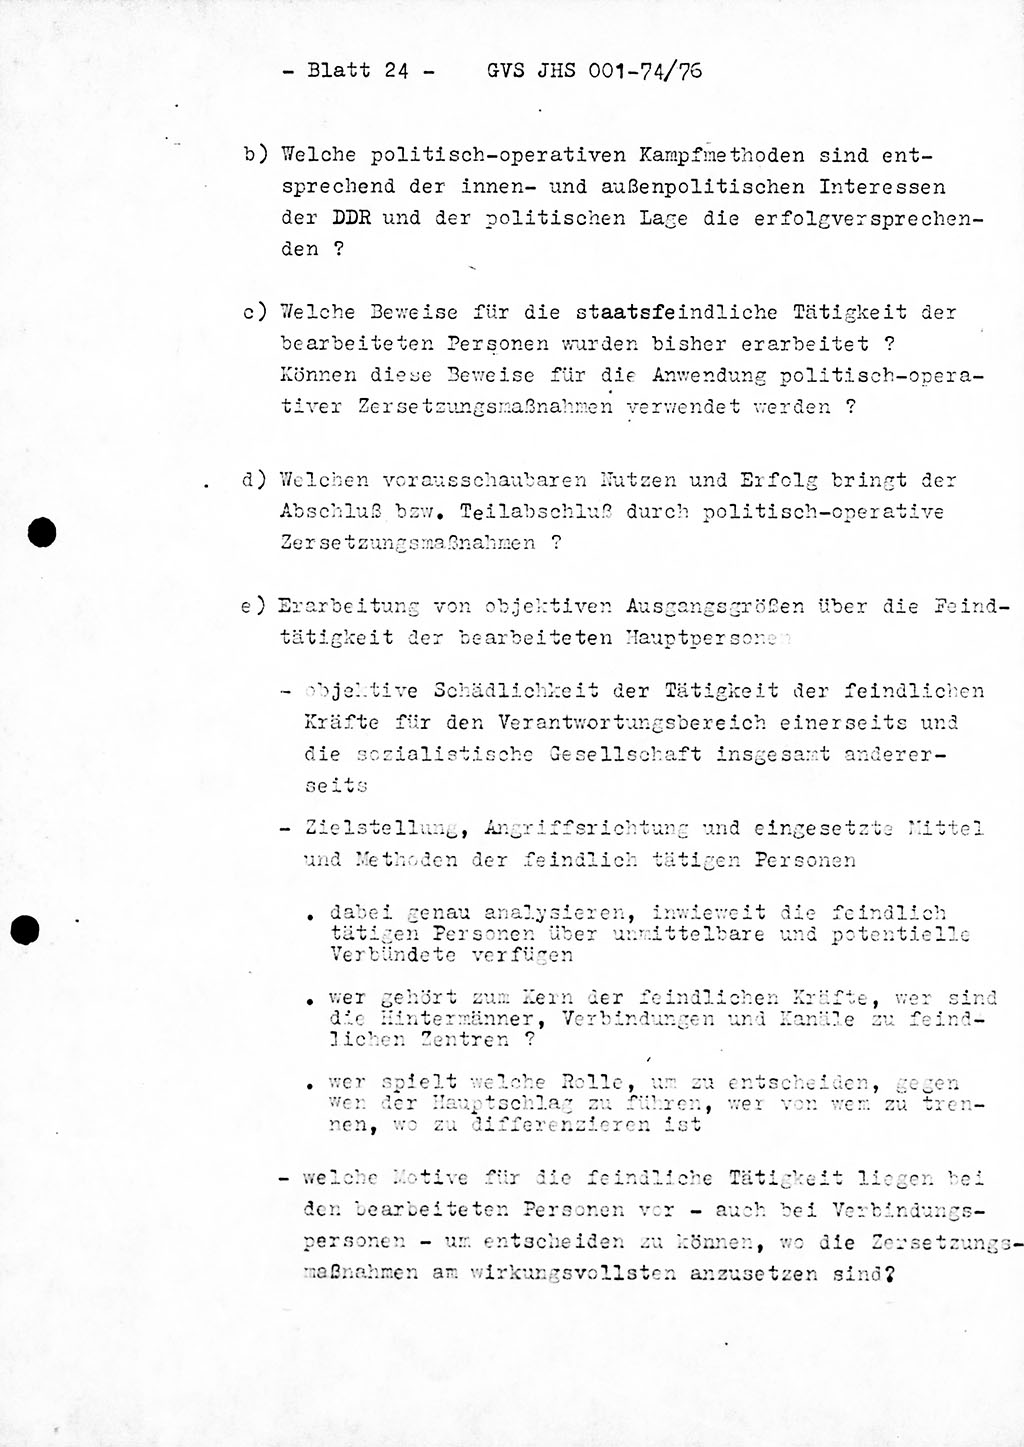 Diplomarbeit Hauptmann Joachim Tischendorf (HA ⅩⅩ), Ministerium für Staatssicherheit (MfS) der Deutschen Demokratischen Republik (DDR), Juristische Hochschule (JHS), Geheime Verschlußsache (GVS) 001-74/76, Potsdam 1976, Seite 24 (Dipl.-Arb. MfS DDR JHS GVS 001-74/76 1976, S. 24)